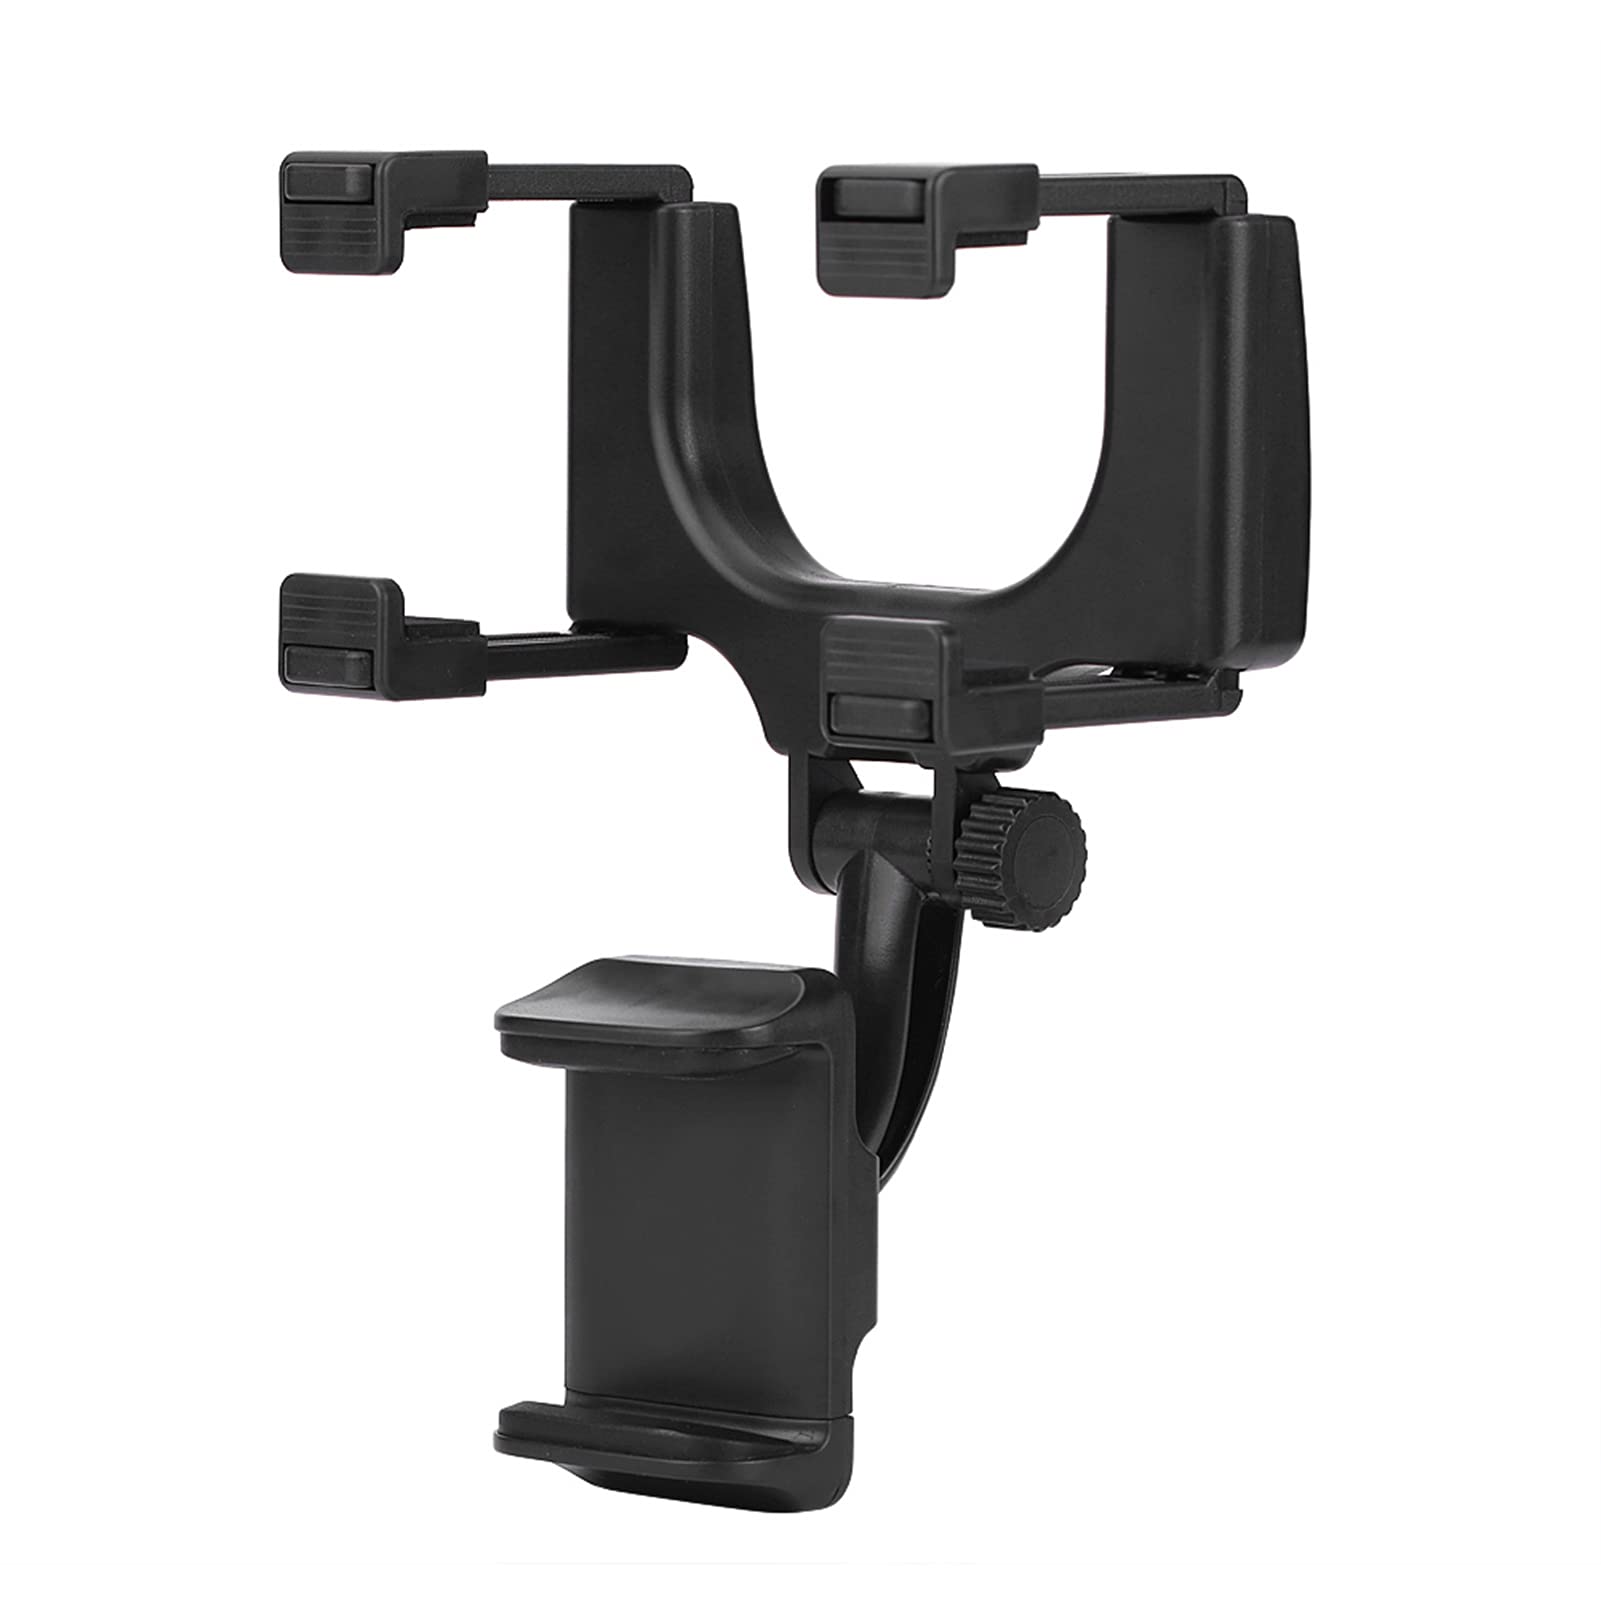 Acouto Universal Auto Rückspiegel Smartphone Handy Halterung Halter Ständer für iPhone Samsung HTC GPS von Mxtech